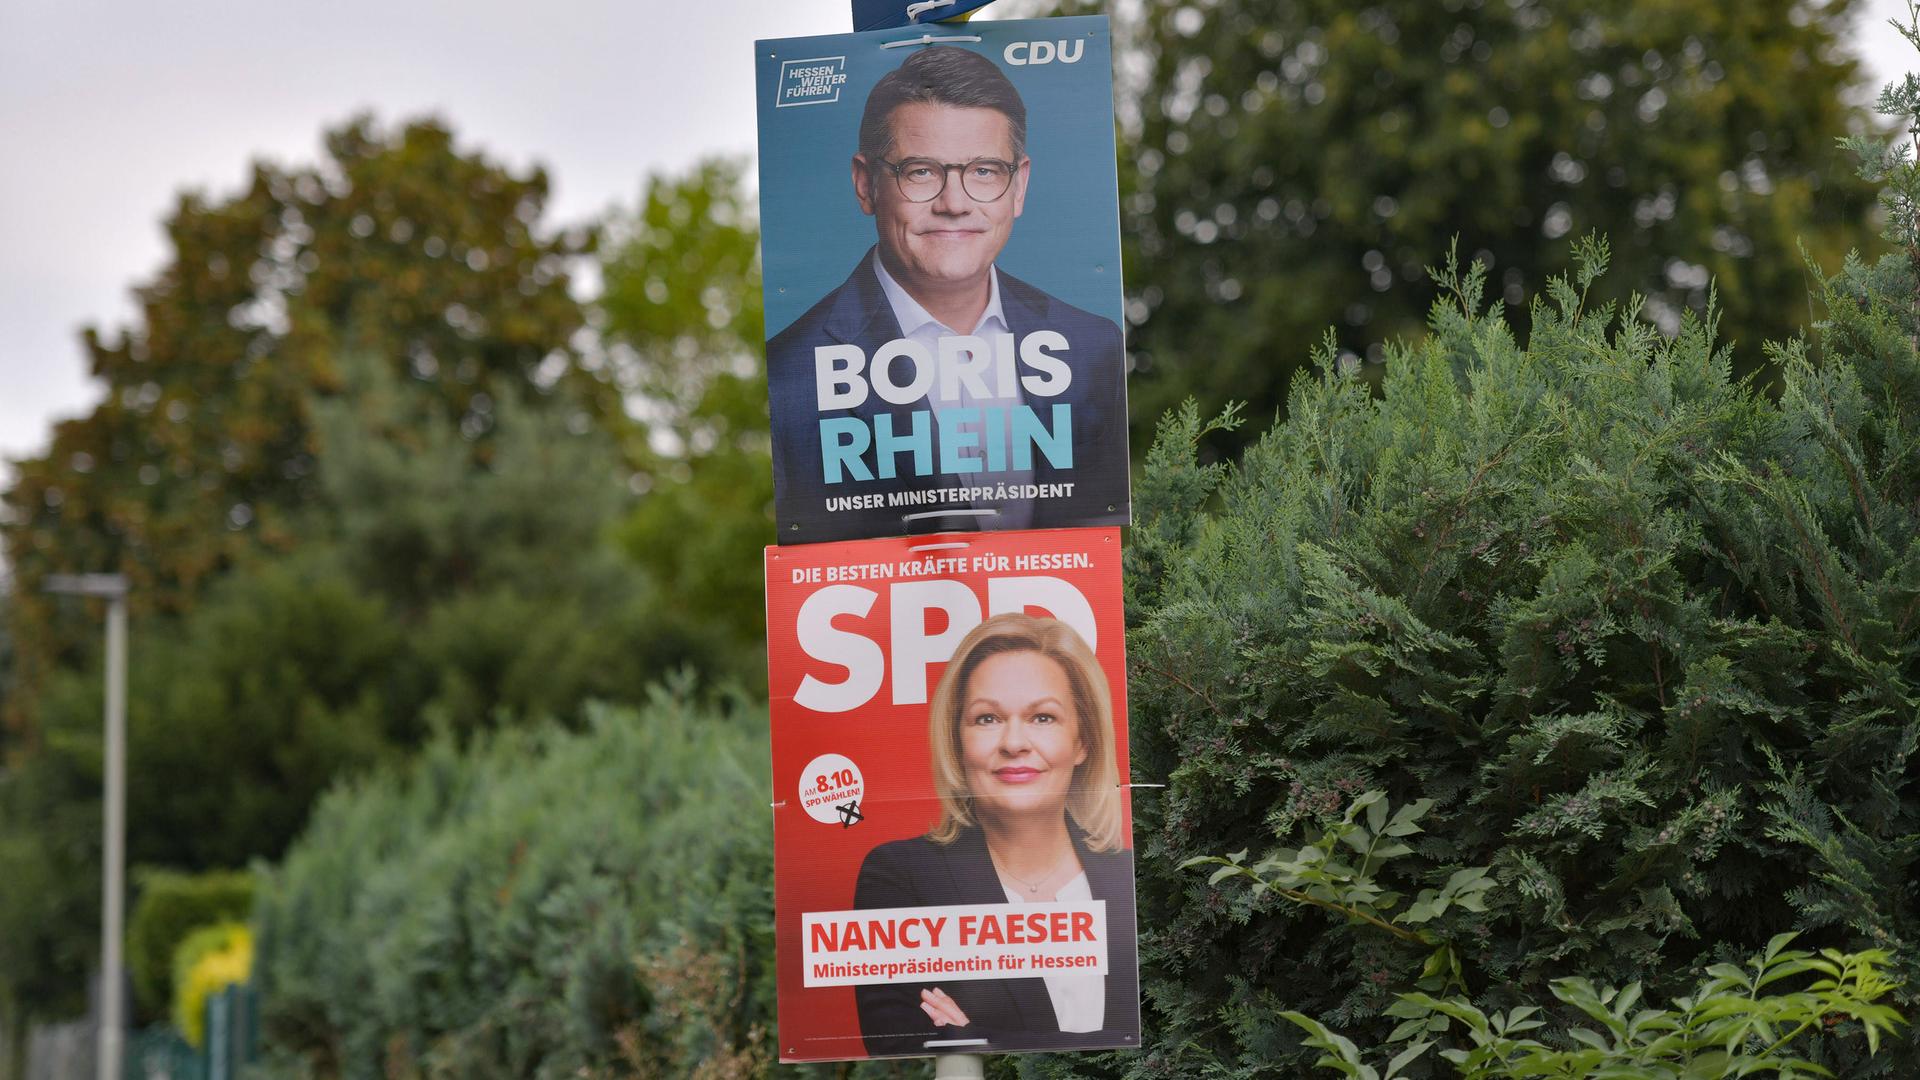 Wahlplakate für die Landtagswahl in Hessen: Das obere Plakat zeigt den CDU-Spitzenkandidaten Boris Rhein, darunter hängt Wahlwerbung der SPD mit Spitzenkandidatin Nancy Faeser.